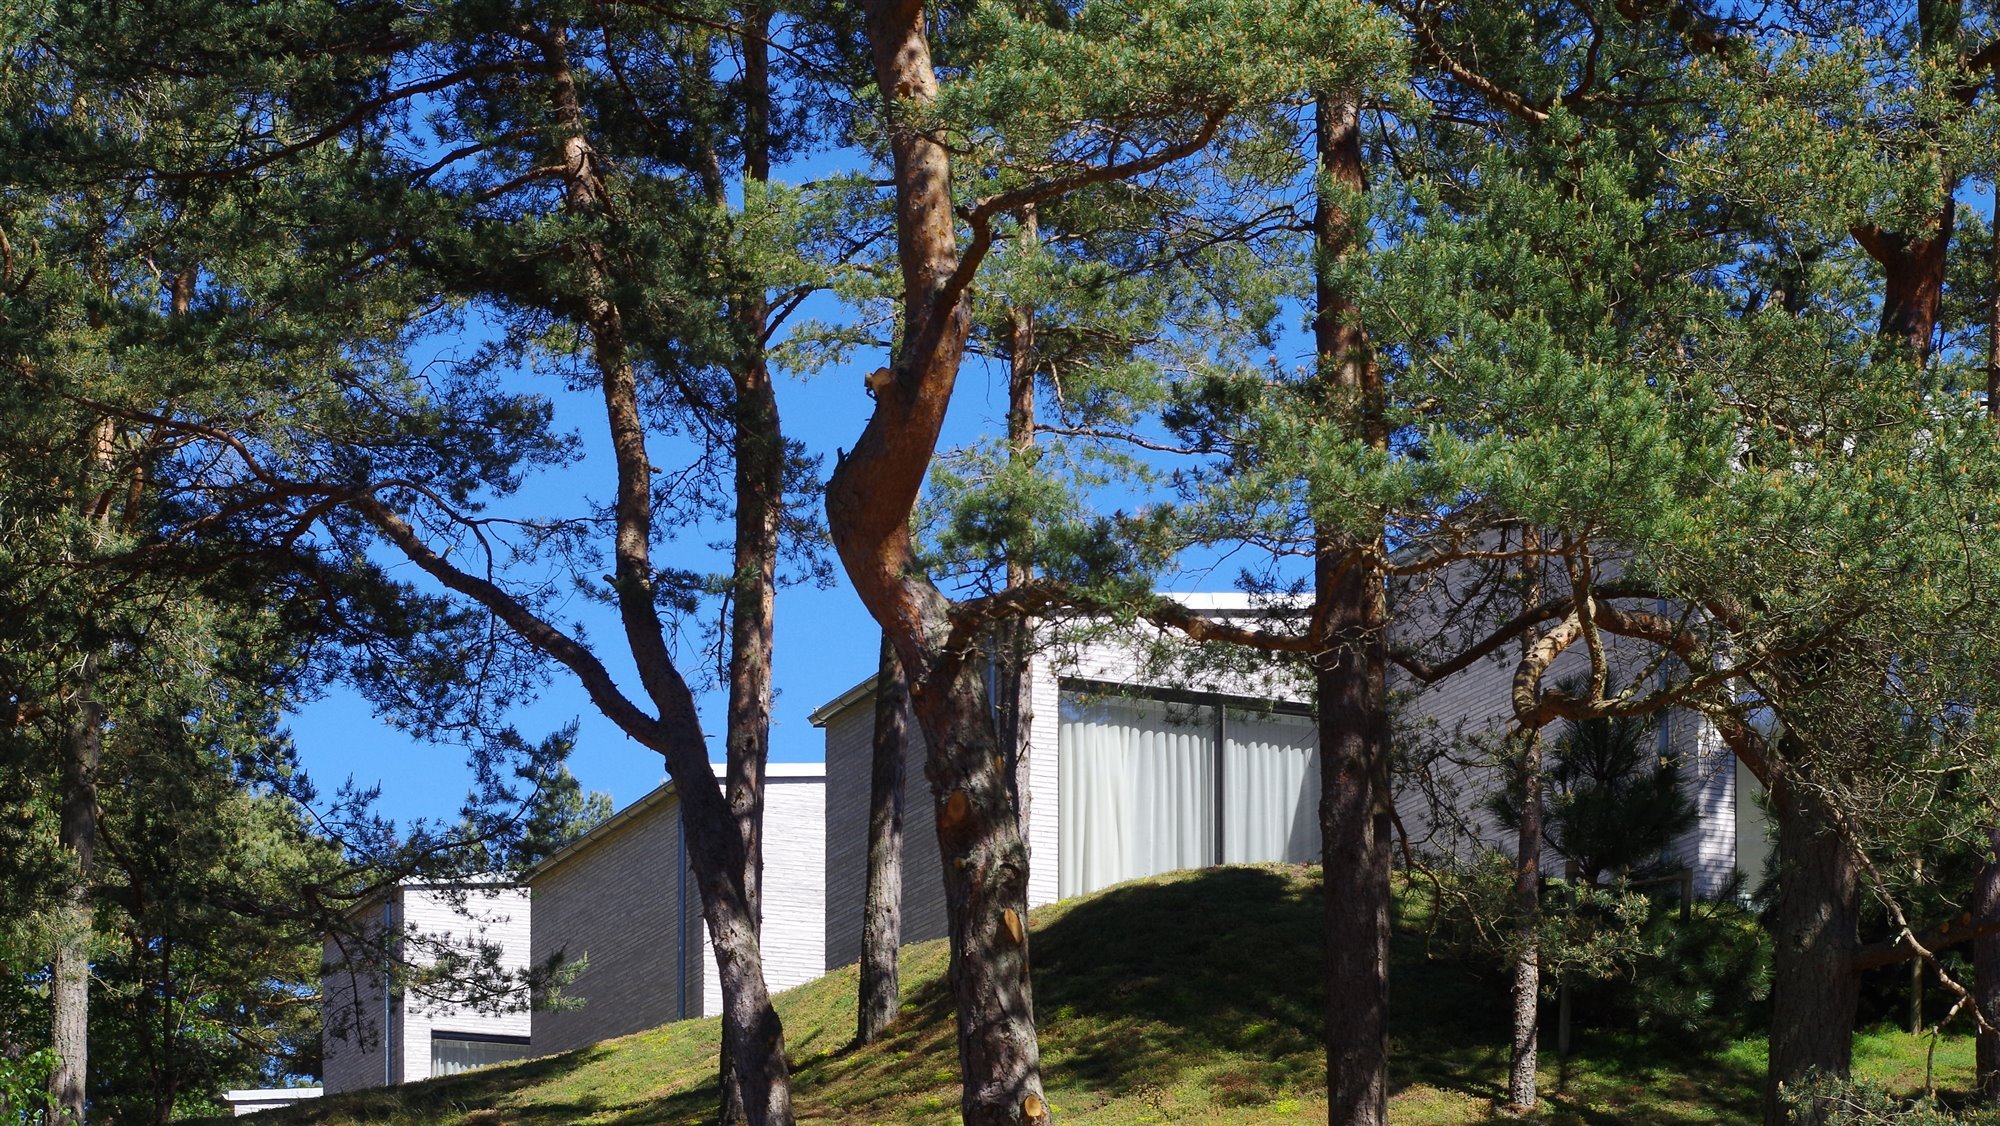 Casa moderna con fachada de piedra en mitad del bosque con arboles